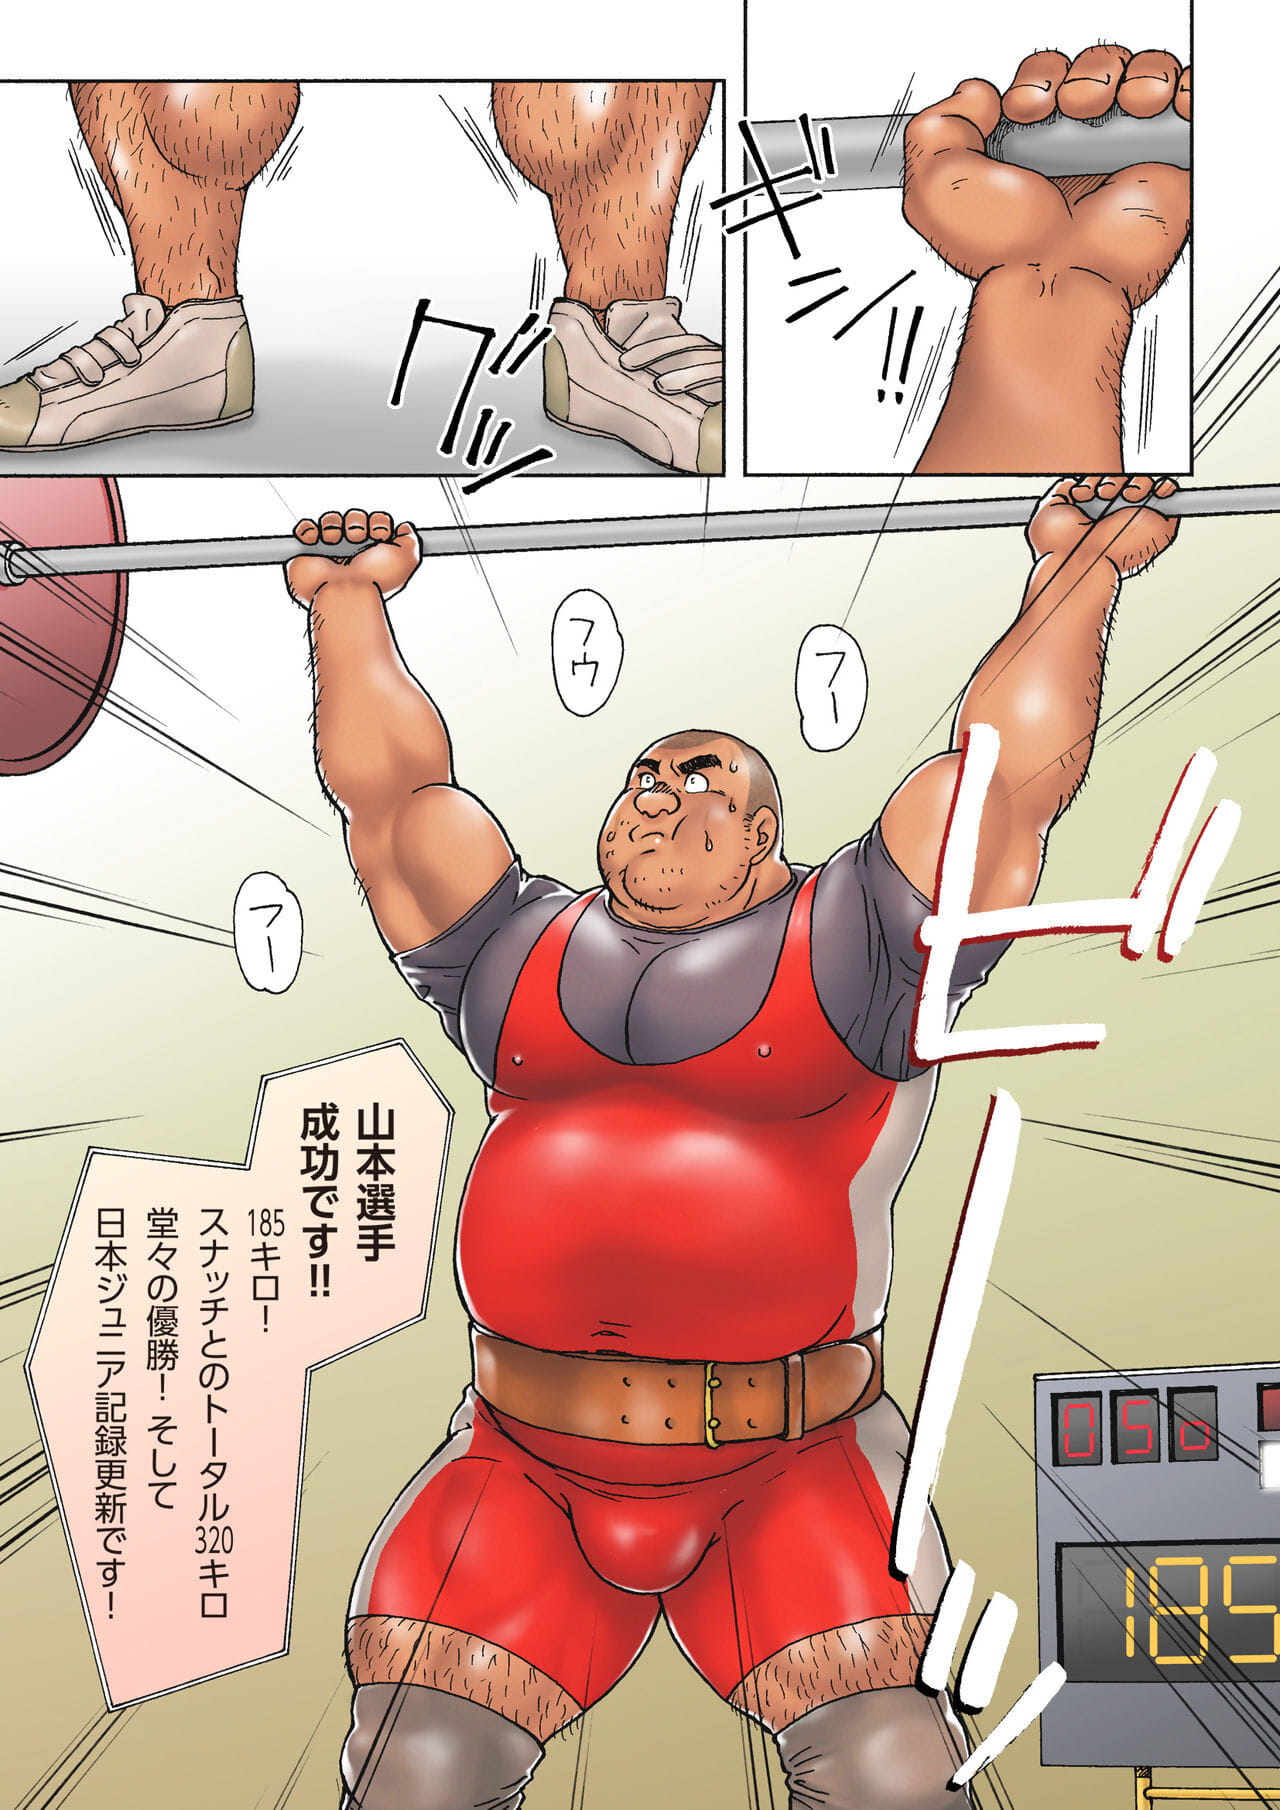 漫画以及动画之中 koukousei 举重运动员 泰开 去 没有 酒店 德 没有 葵 夜的 page 1